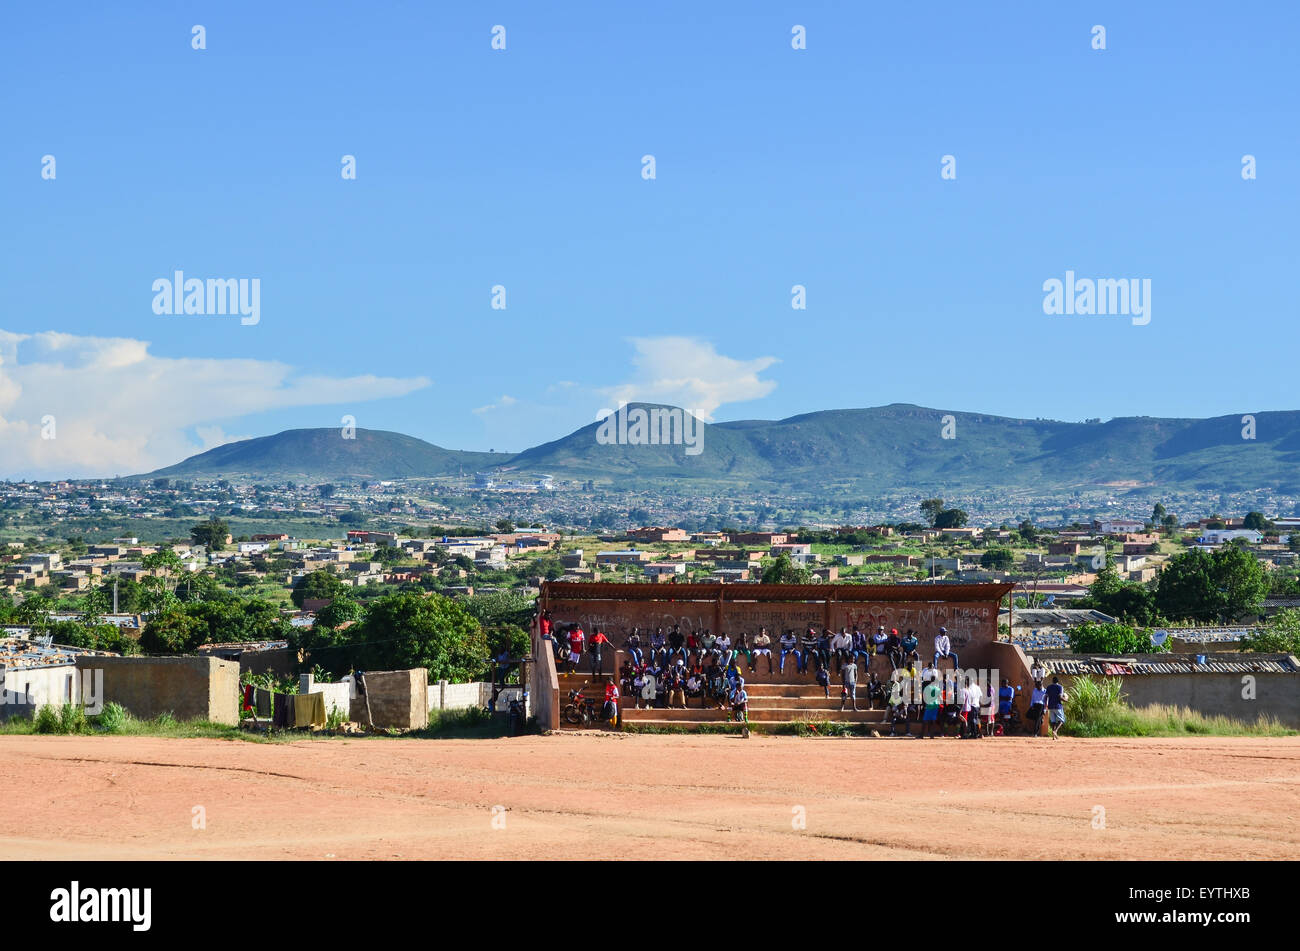 Blick auf die Stadt von Lubango, Angola, mit einem Fußballstadion im Vordergrund Stockfoto